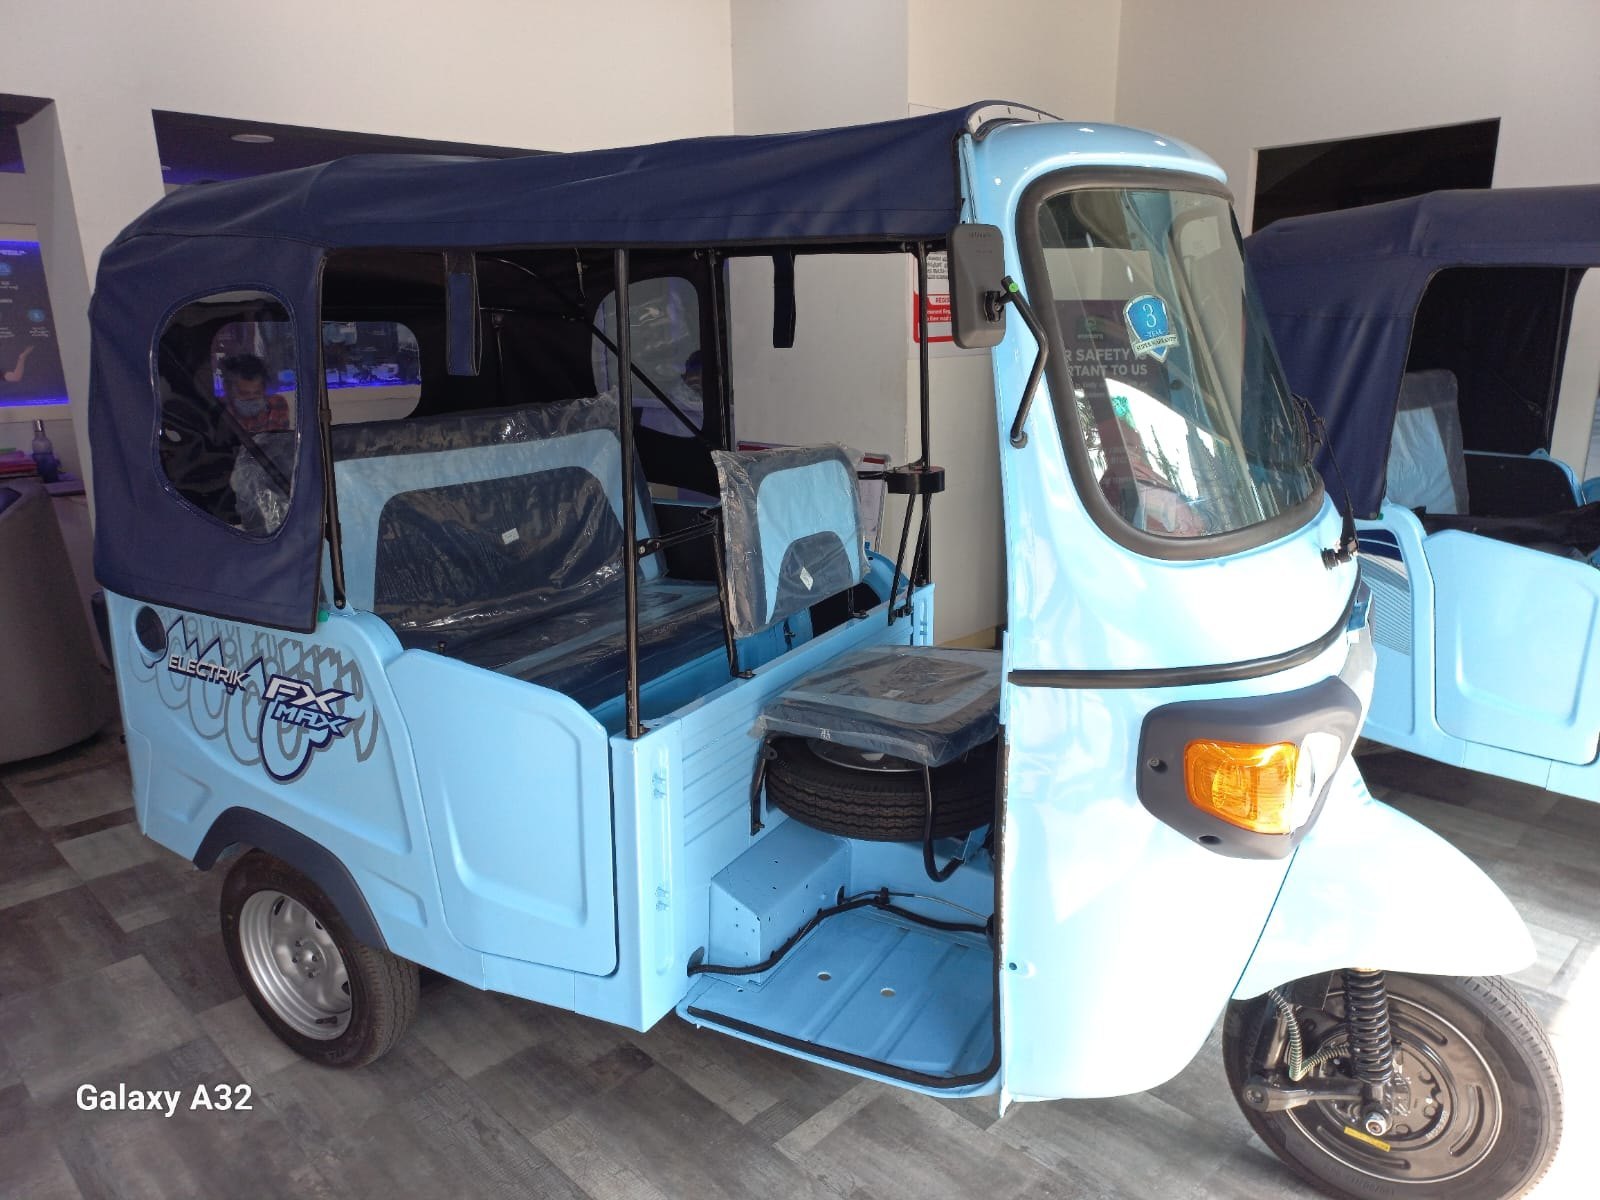 Electric Piaggio Ape E City FX NE MAX E Rickshaw, Vehicle Capacity: 4 Seater at Rs 342240/piece in Kochi